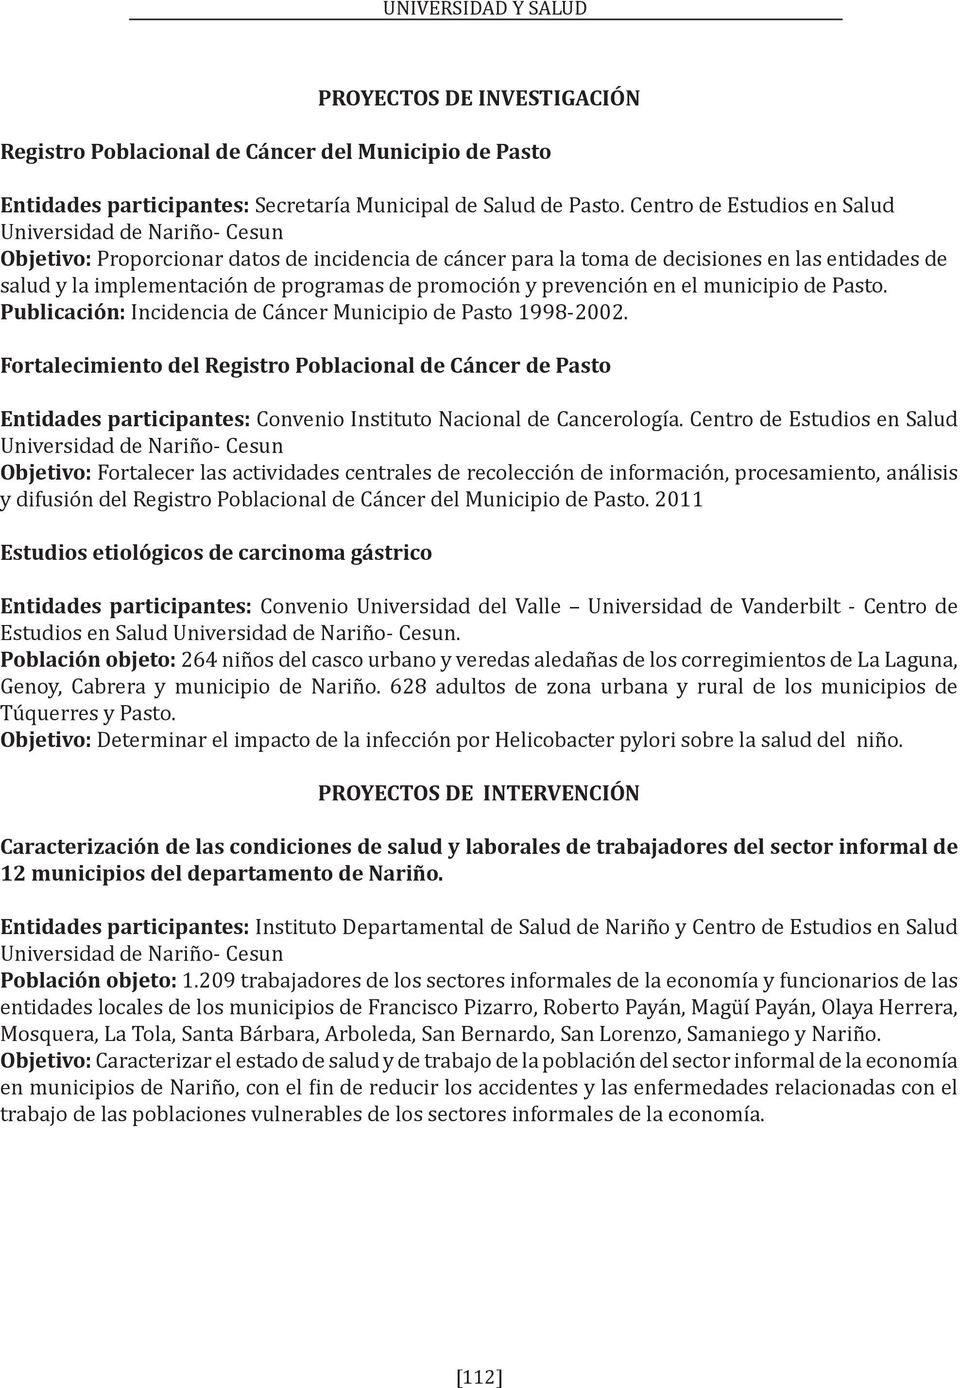 promoción y prevención en el municipio de Pasto. Publicación: Incidencia de Cáncer Municipio de Pasto 1998-2002.